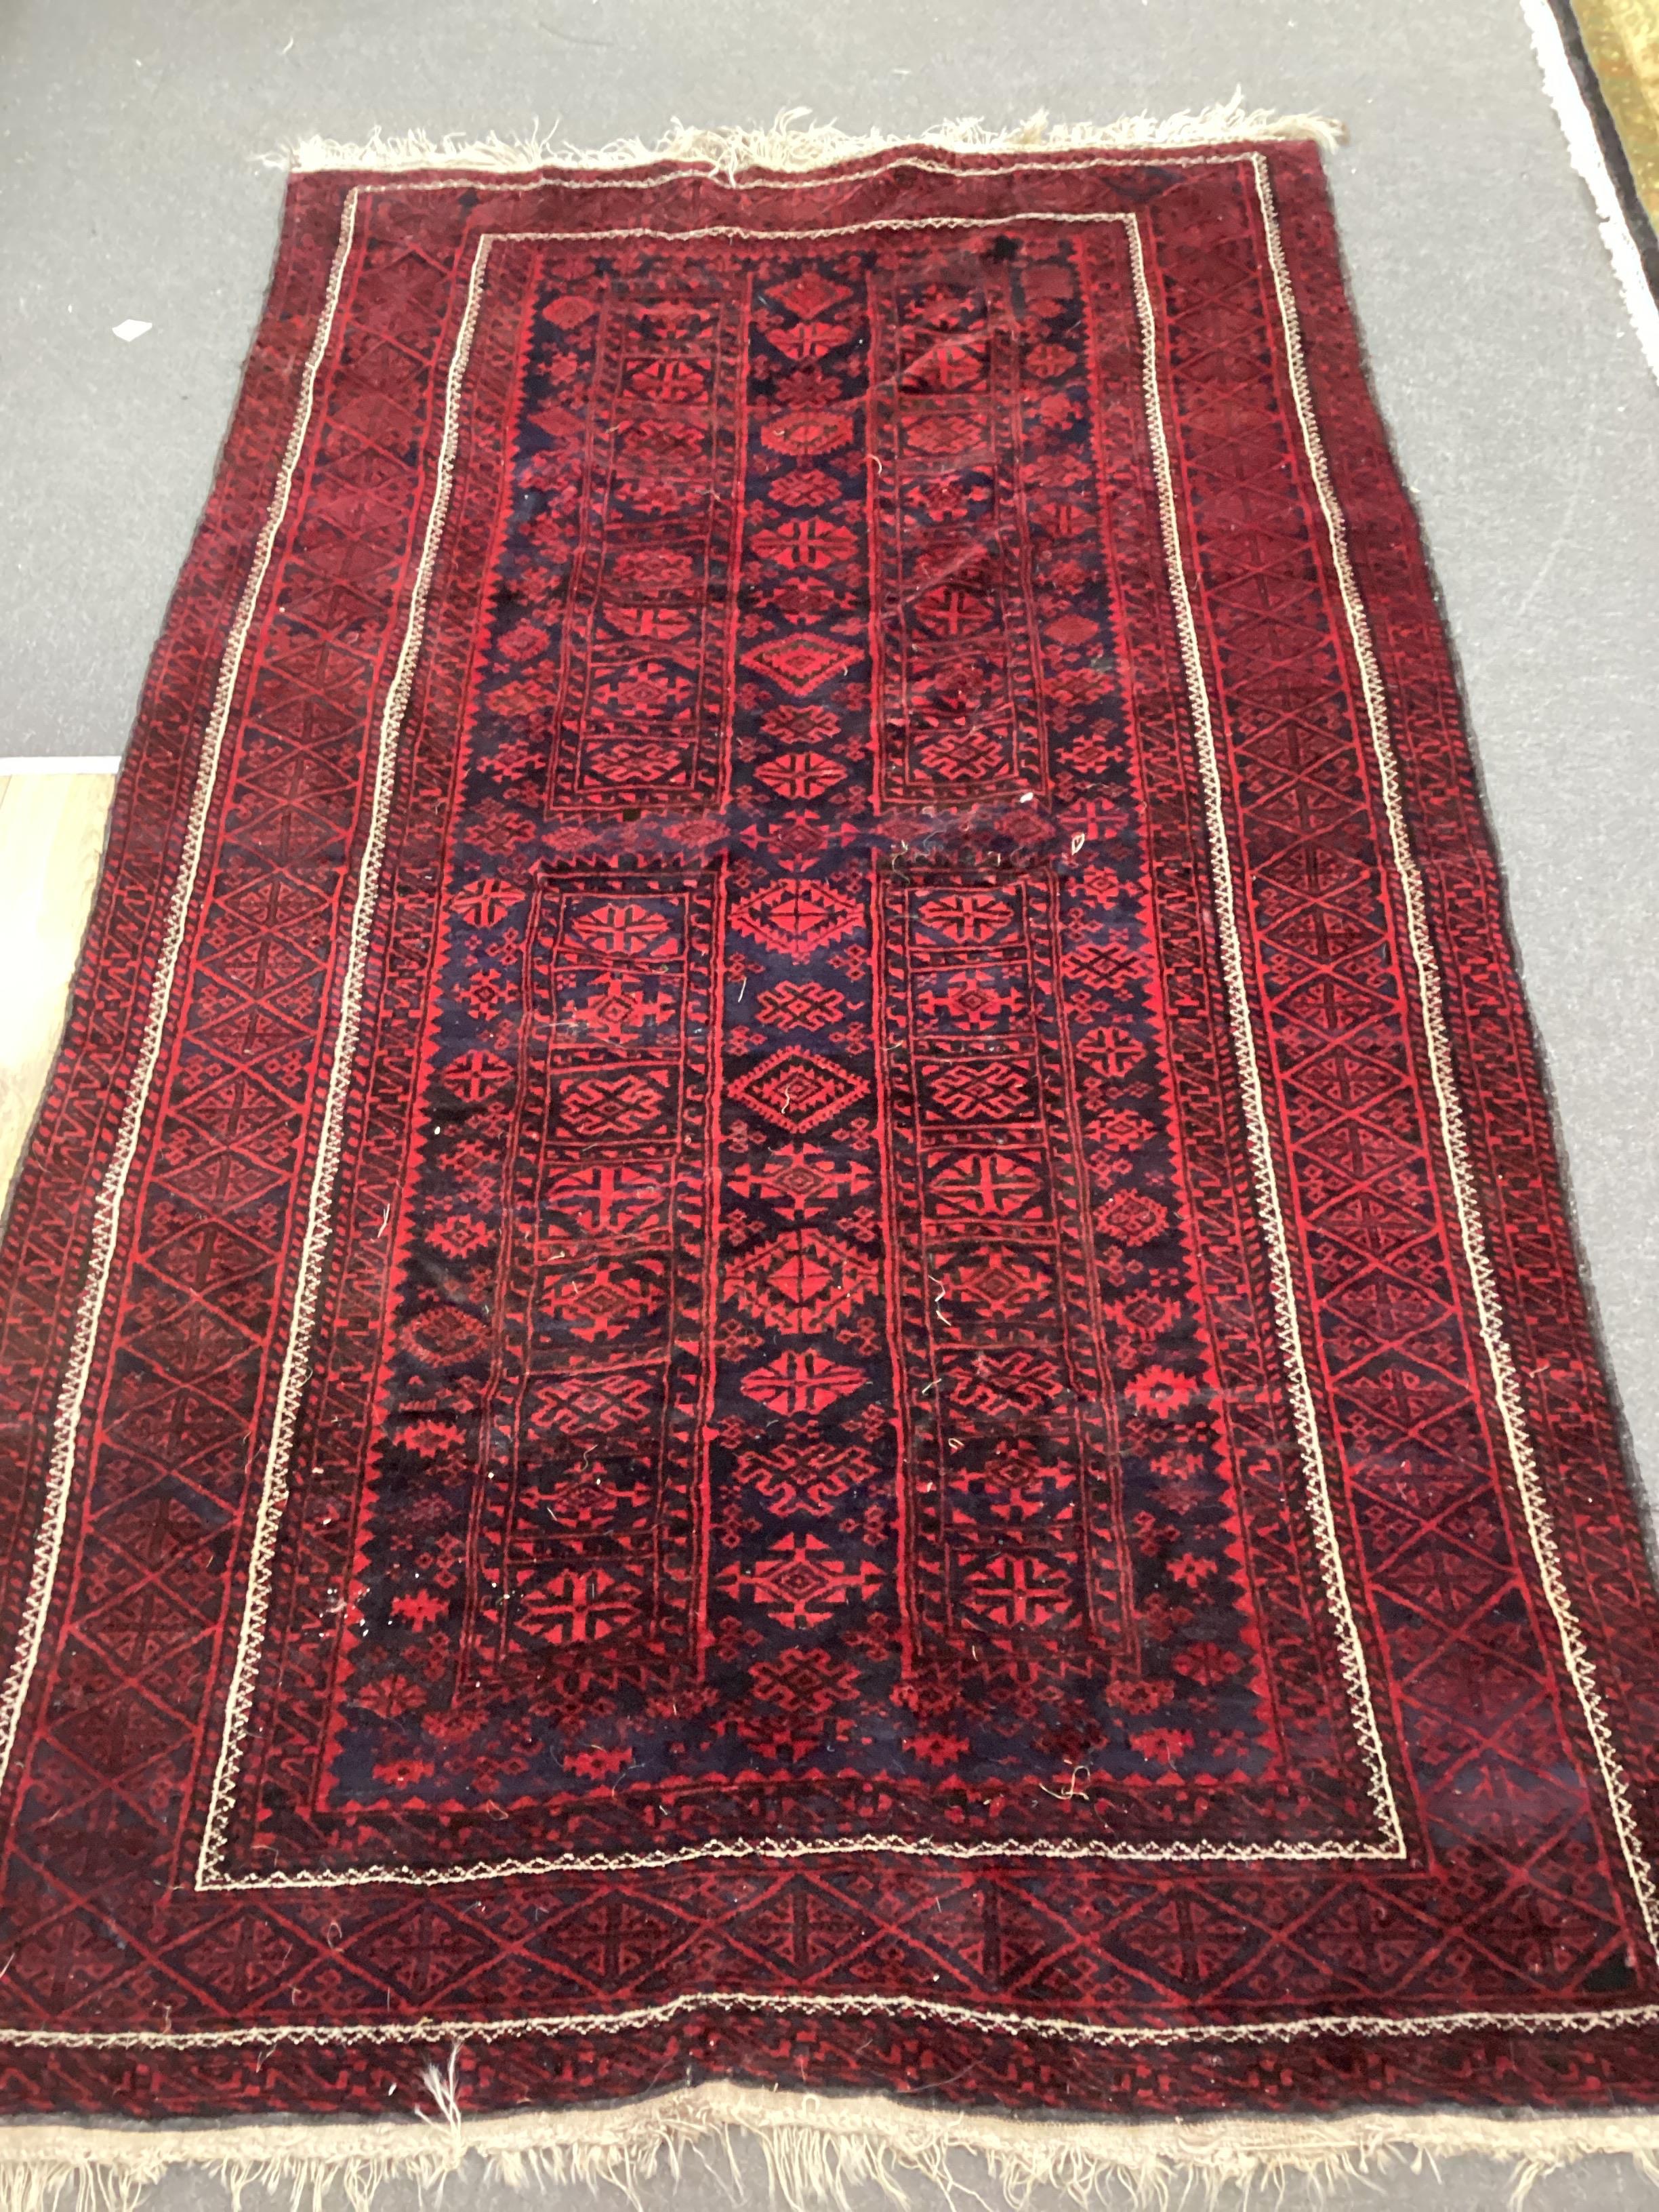 A Belouch blue ground geometric rug, 244cm x 120cm                                                                                                                                                                          